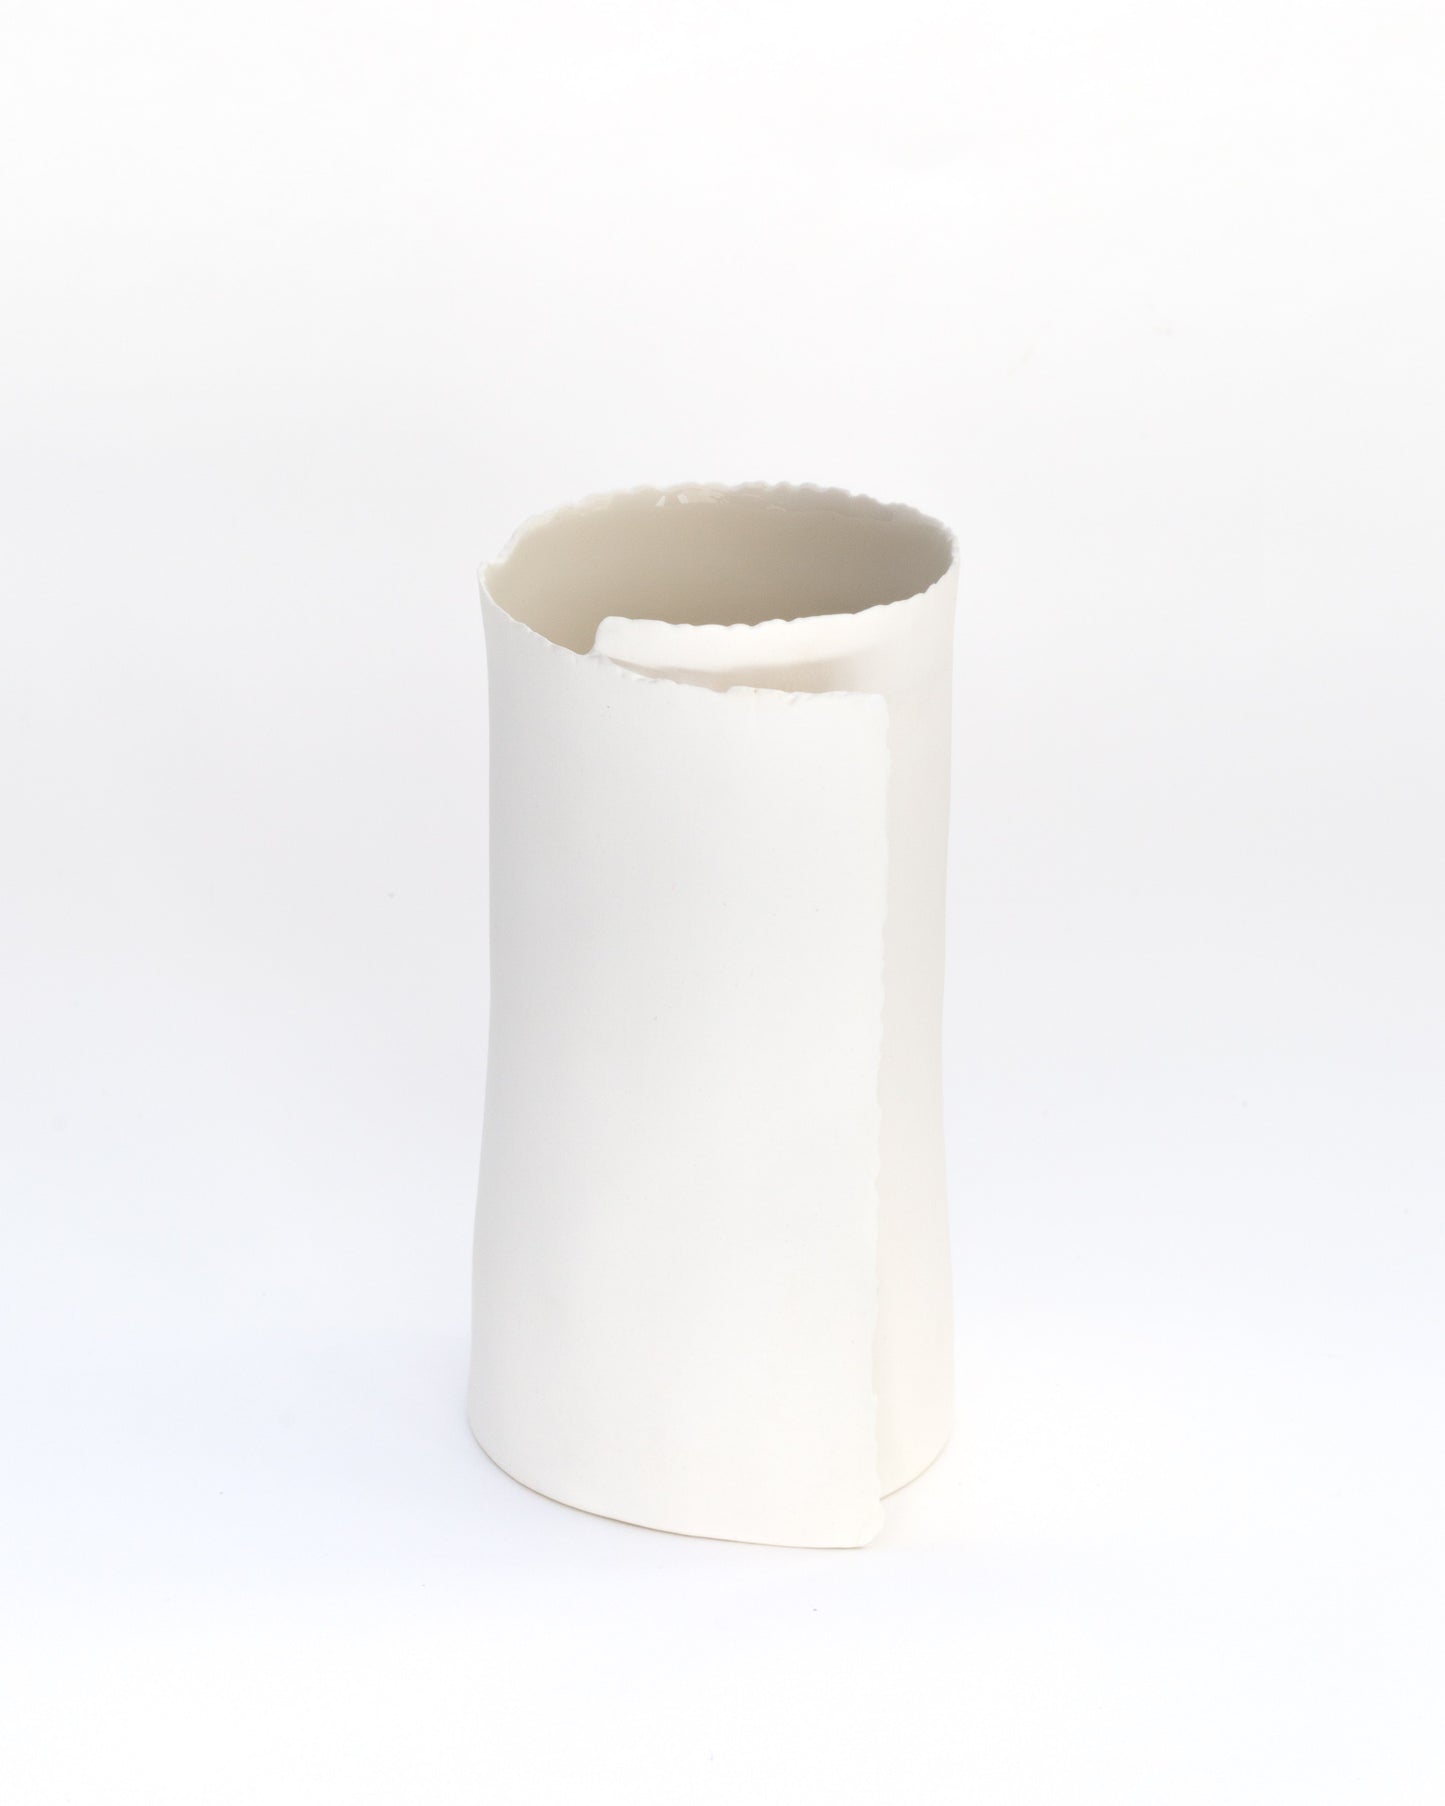 ARK 4 vase biscuit porcelain H=19cm, D=9,5cm